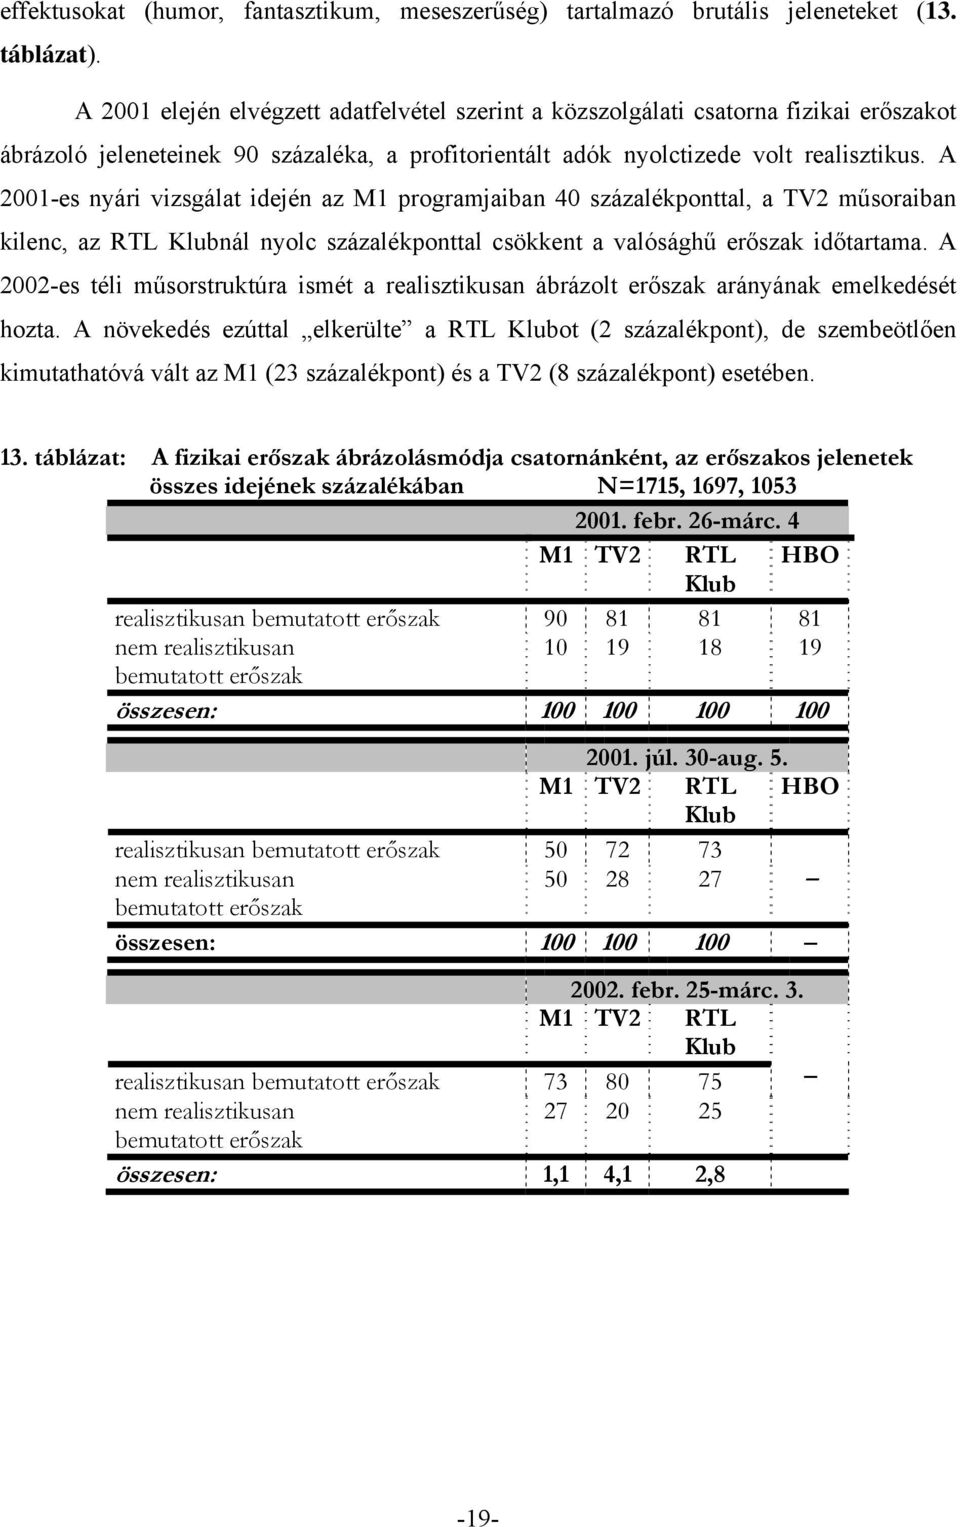 A 2001-es nyári vizsgálat idején az M1 programjaiban 40 százalékponttal, a TV2 műsoraiban kilenc, az RTL Klubnál nyolc százalékponttal csökkent a valósághű erőszak időtartama.